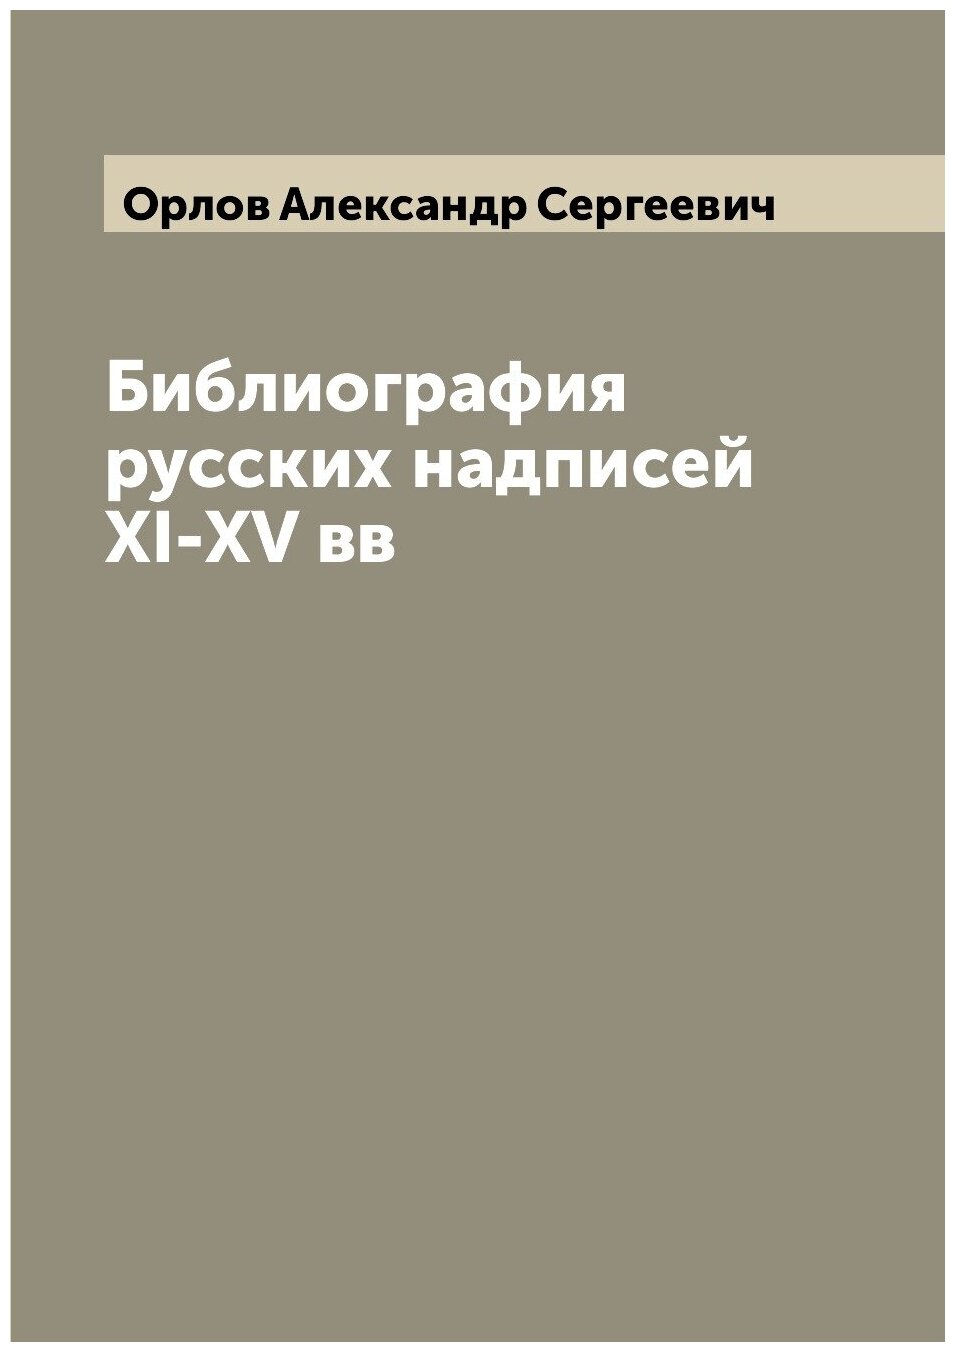 Библиография русских надписей XI-XV вв